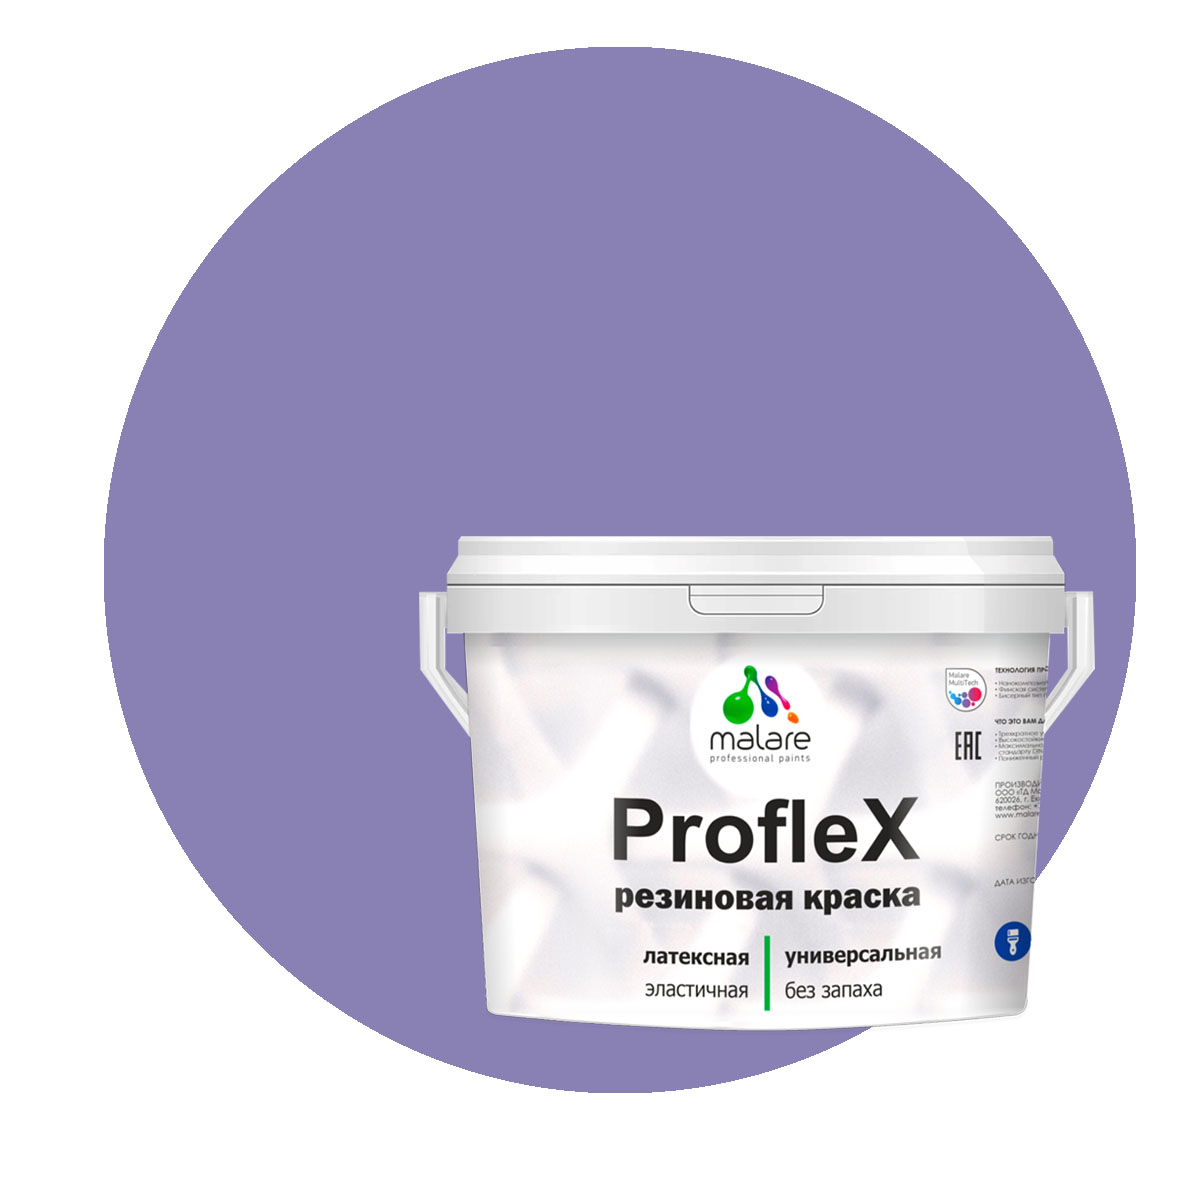 Краска Malare ProfleX для фасадов, интерьера, мебели, фиалковый, 10 кг. щелочной очиститель фасадов зданий plex